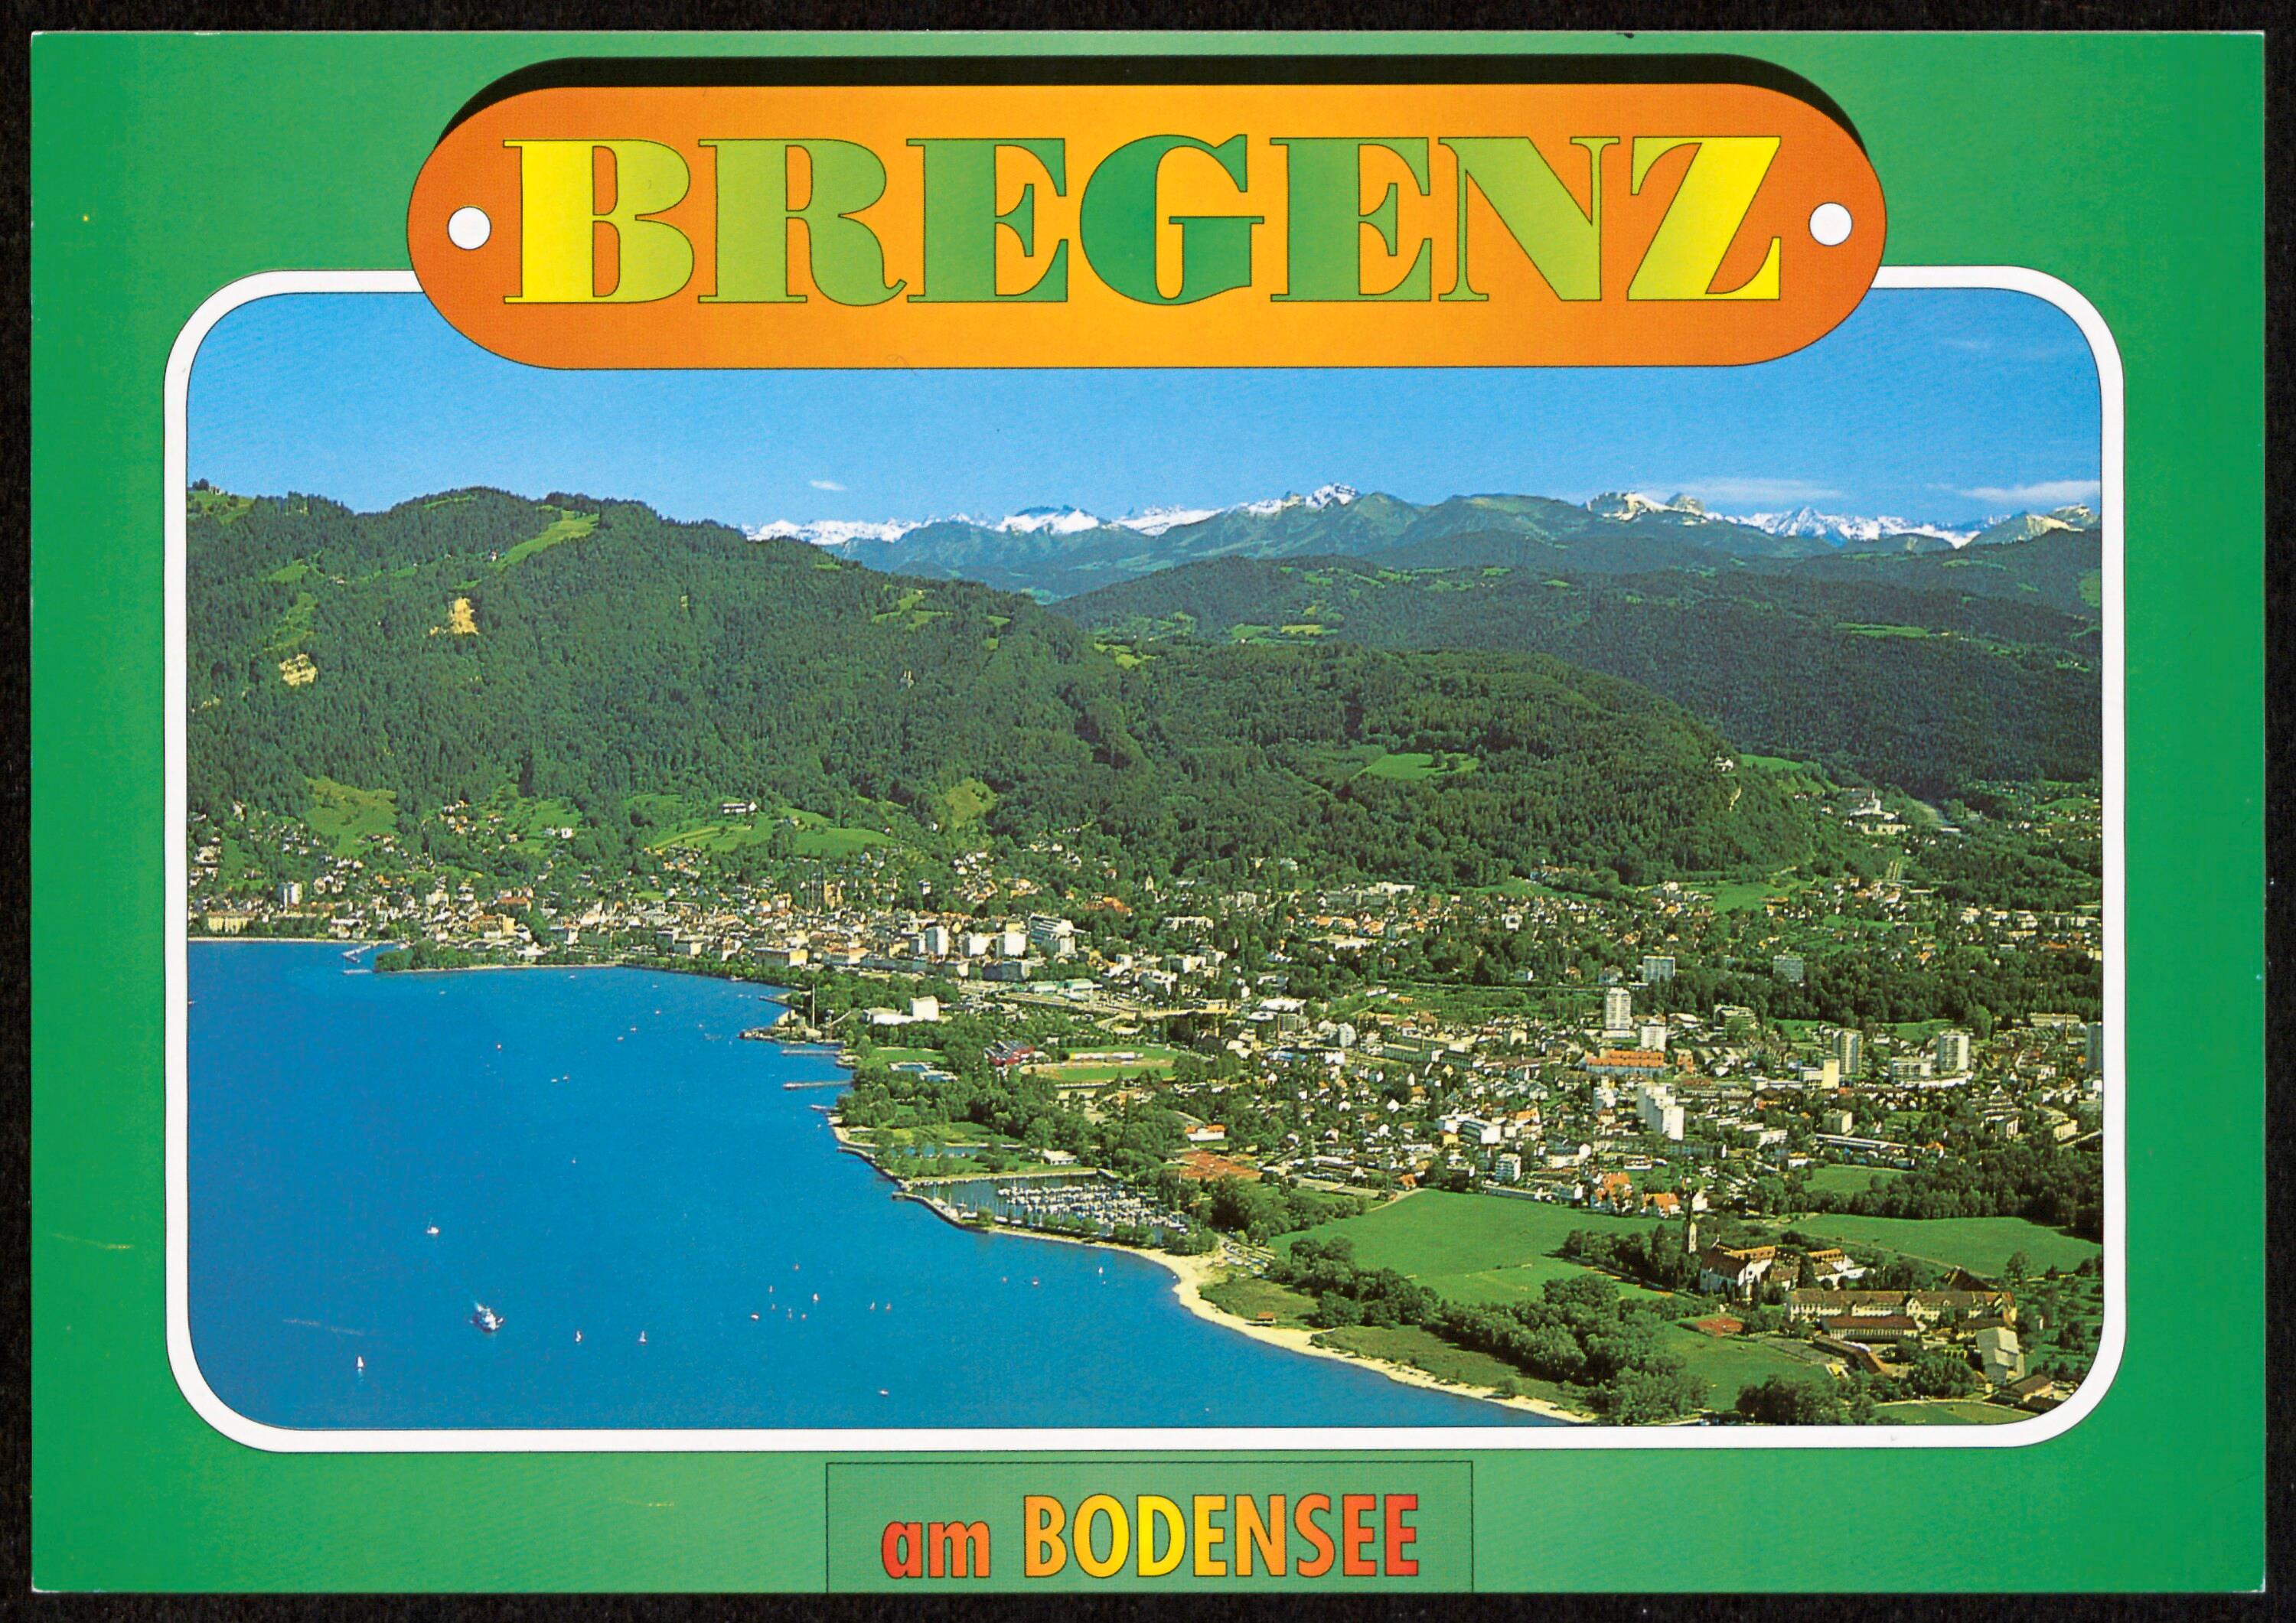 Bregenz am Bodensee></div>


    <hr>
    <div class=